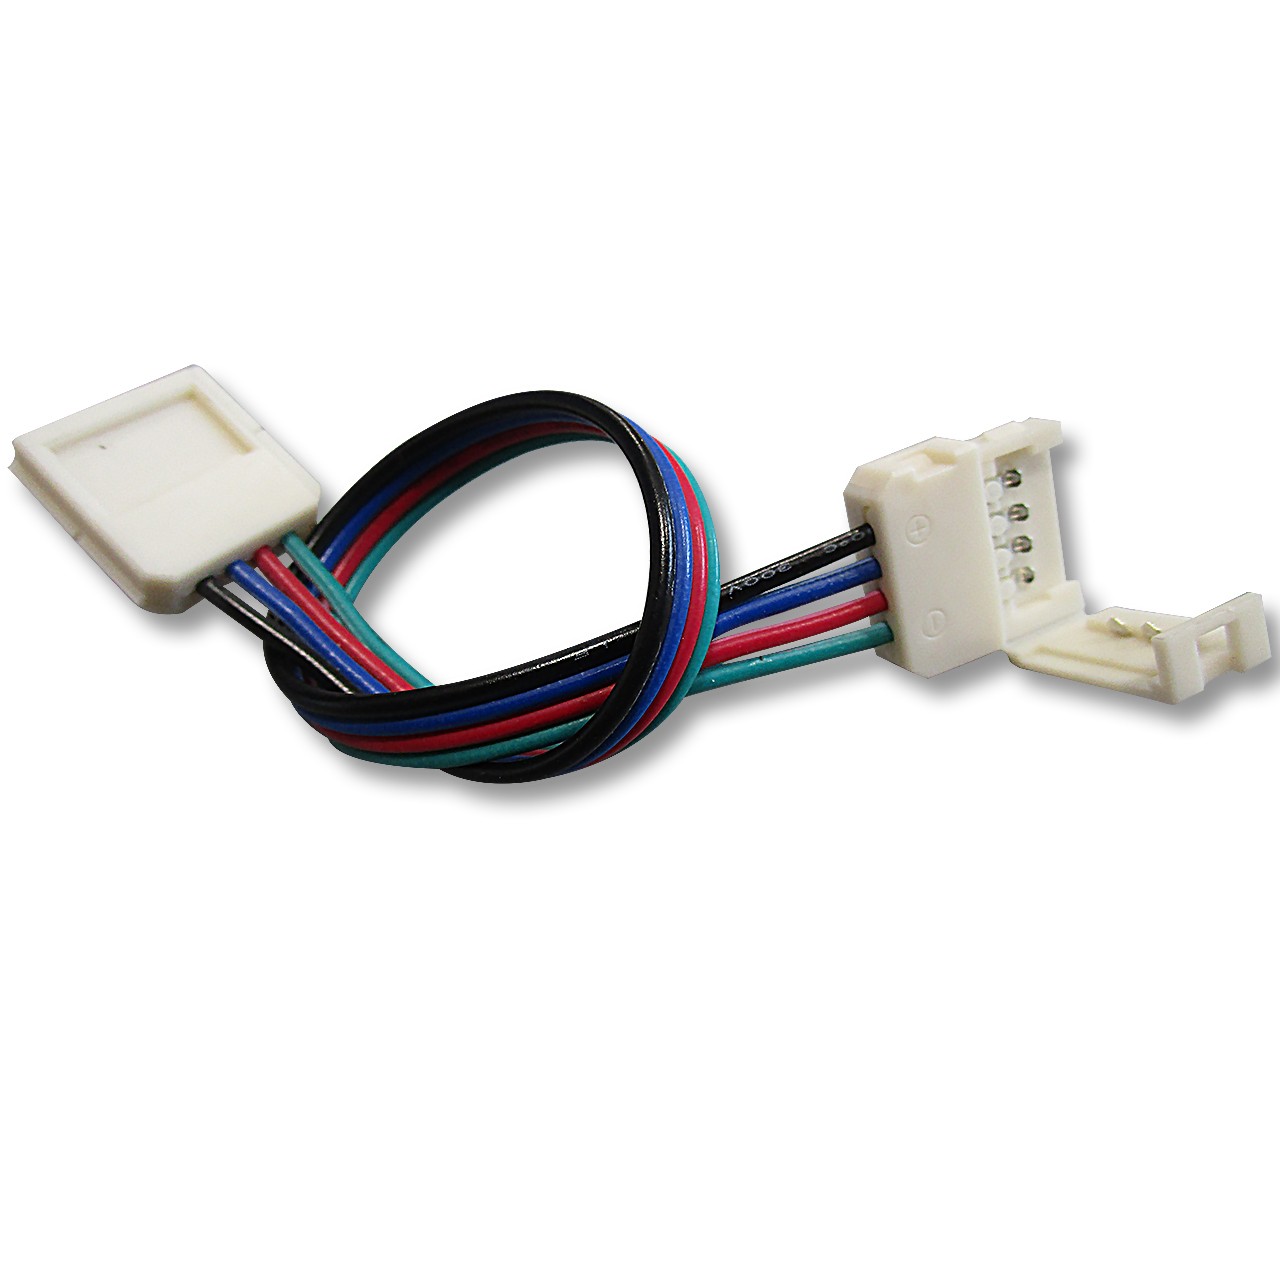 Kit câbles et fiche - connecteur pour contrôleur et autres - 2 pistes